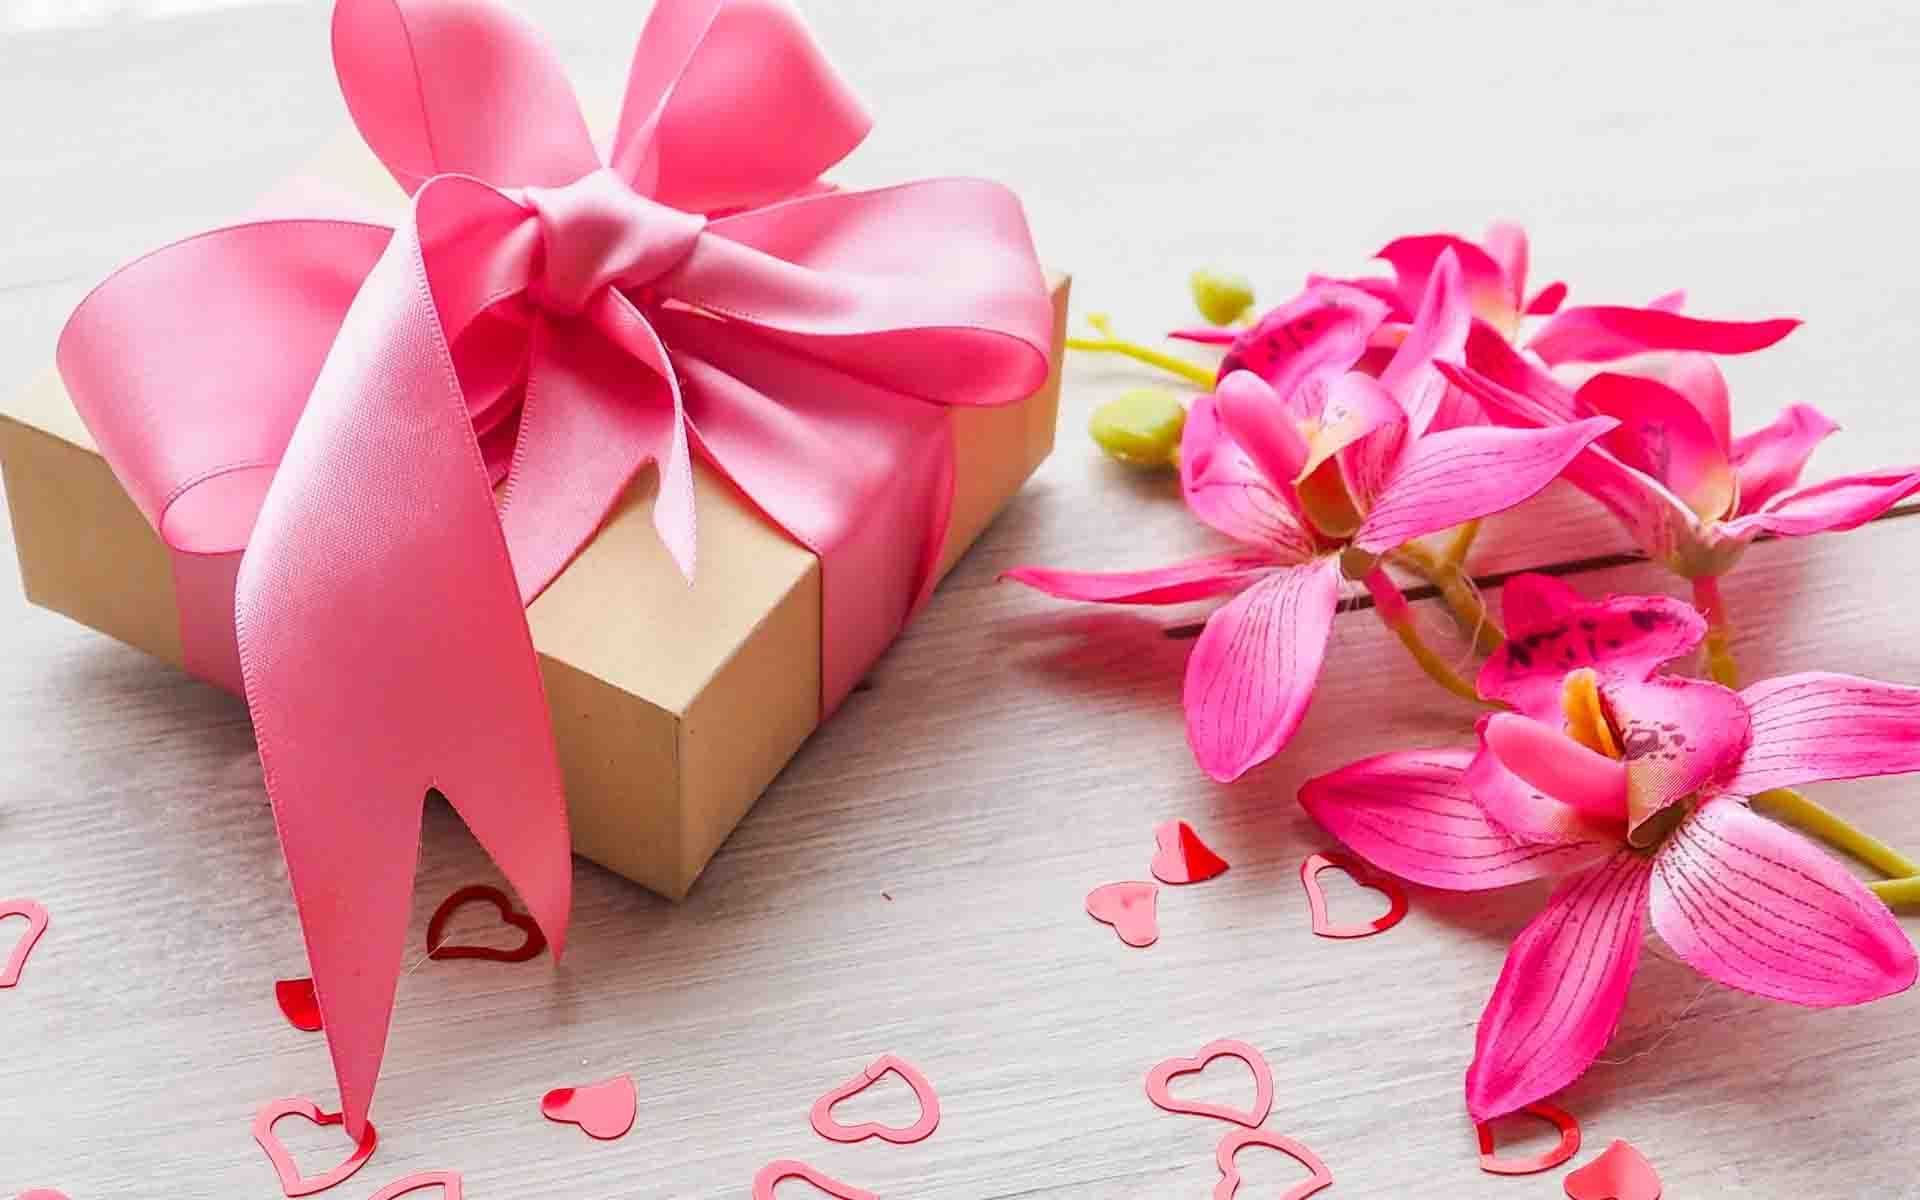 romantic wallpaper hd,pink,petal,ribbon,present,party favor